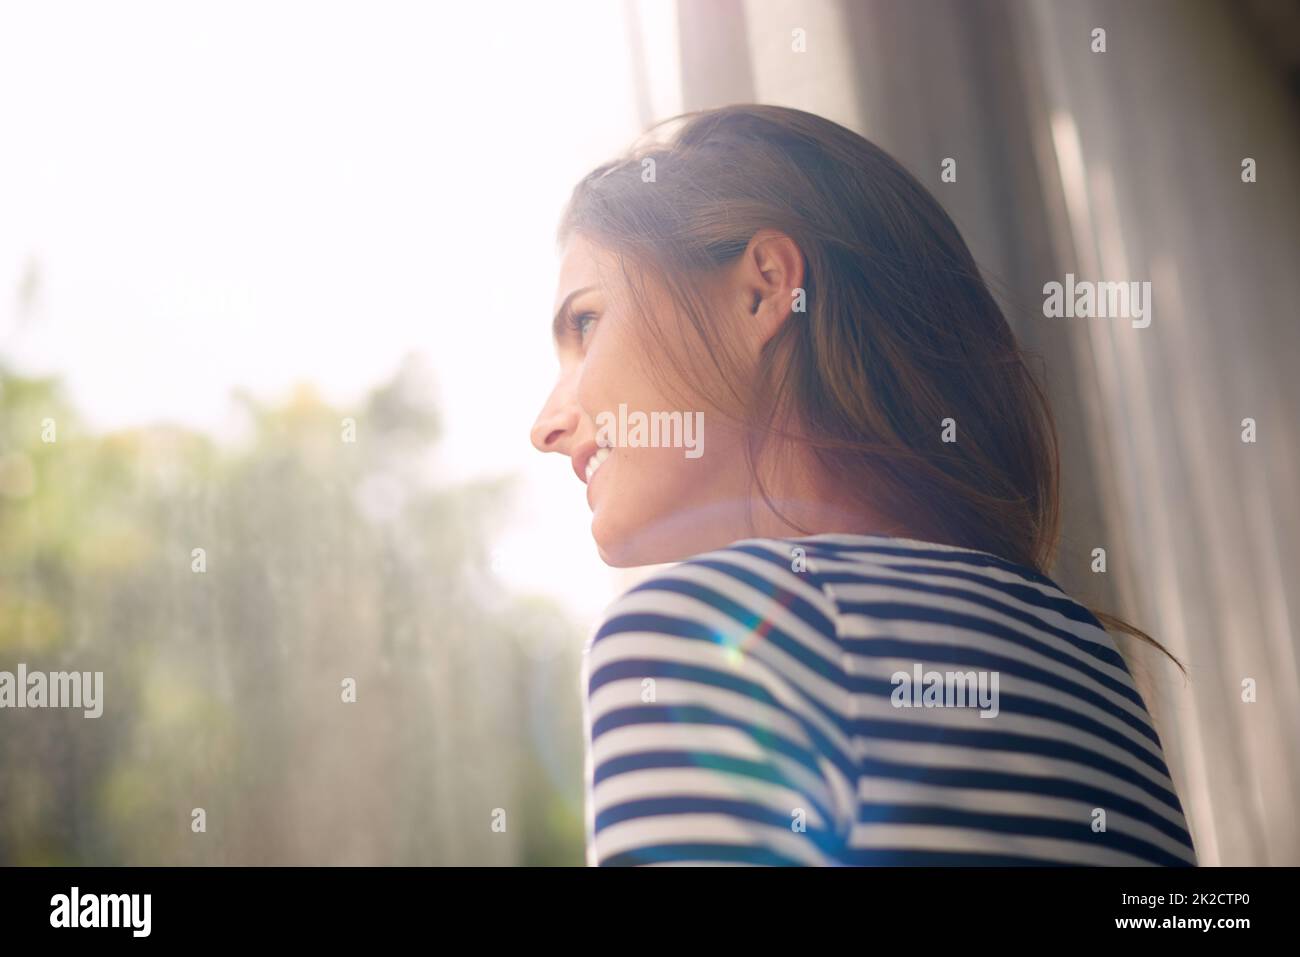 Sarà una bella giornata. Scatto corto di una bella giovane donna bagnata dalla luce della finestra. Foto Stock